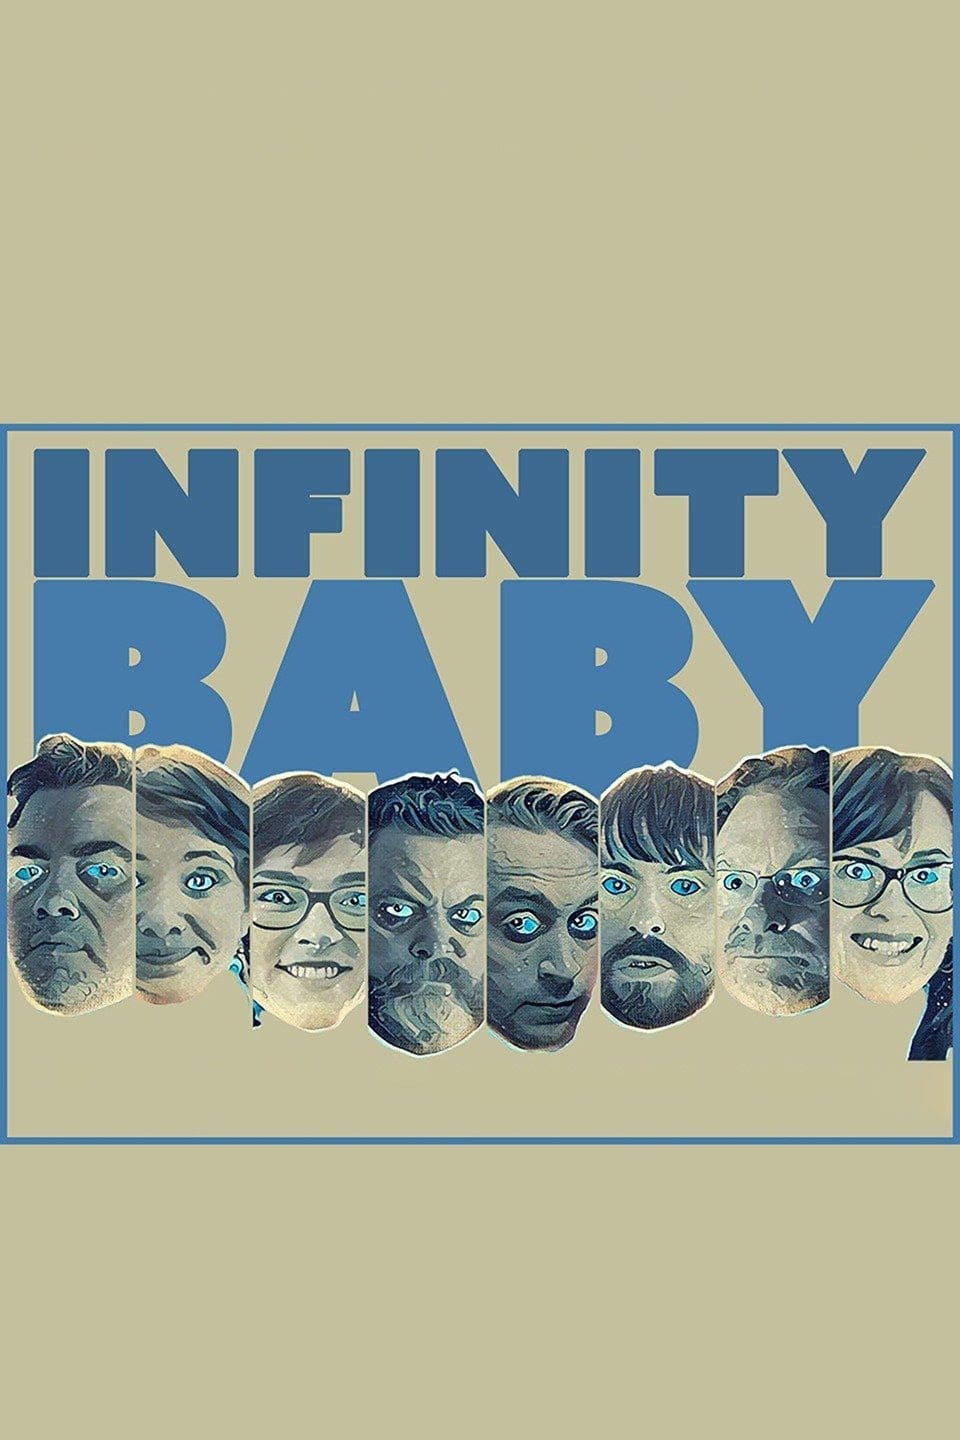 Infinity Baby (2017)